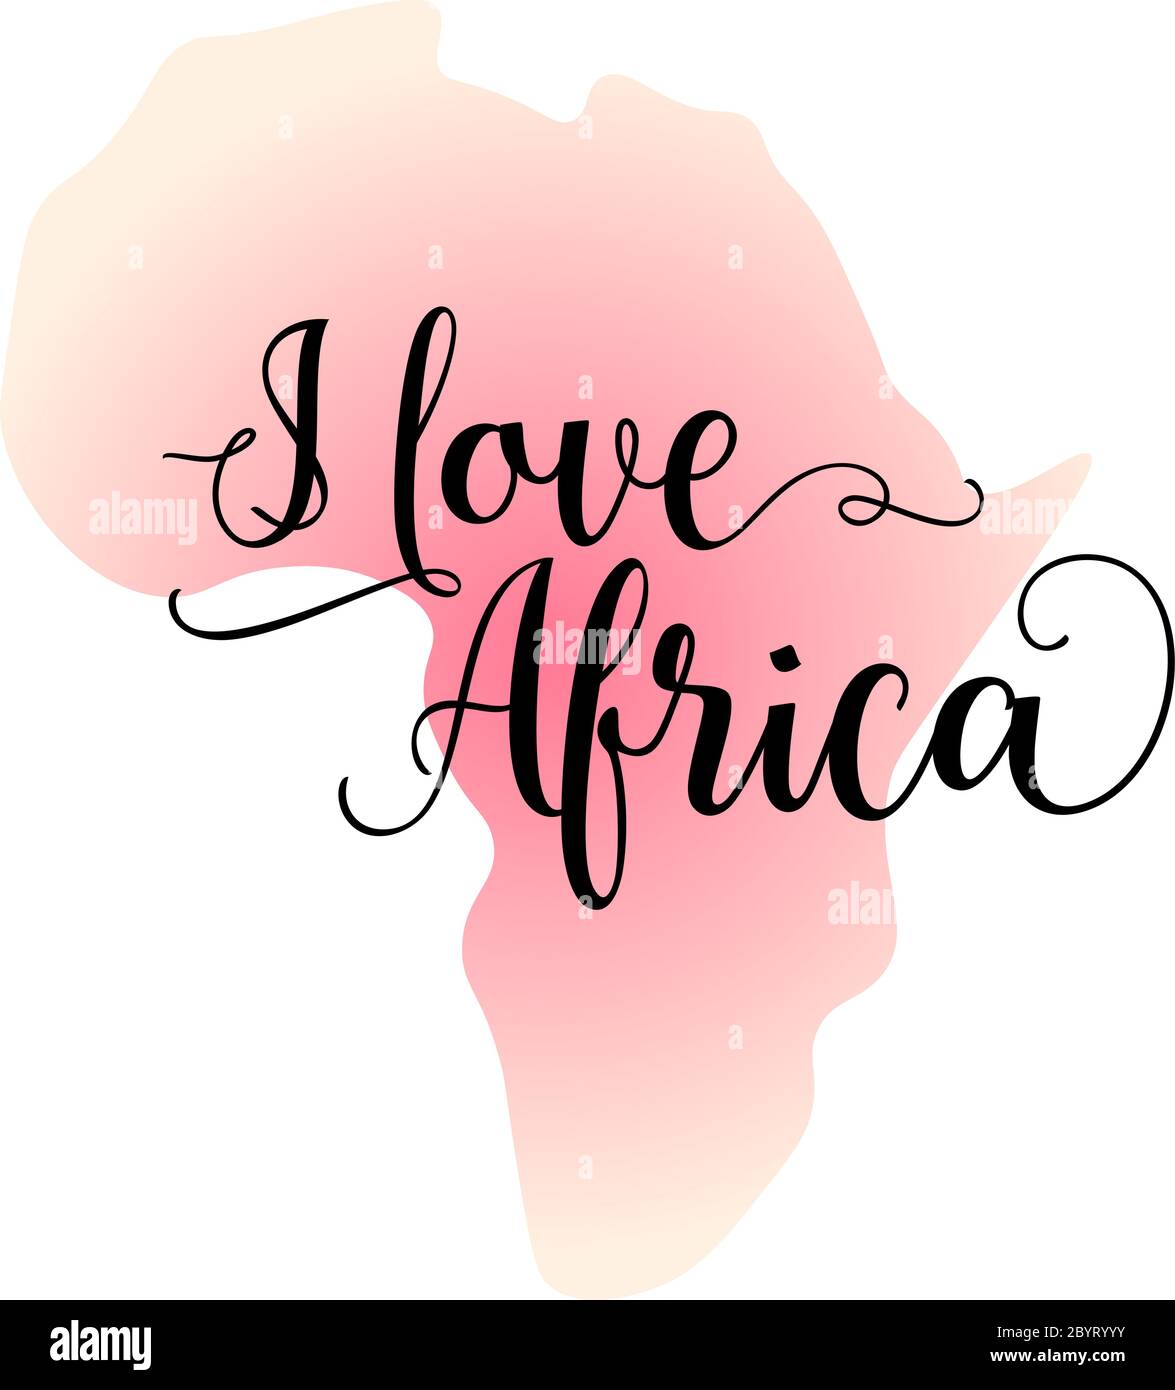 J'adore Afirca. Calligraphie inspiration citation graphique conception avec silhouette de l'Afrique sur le fond. Illustration de Vecteur